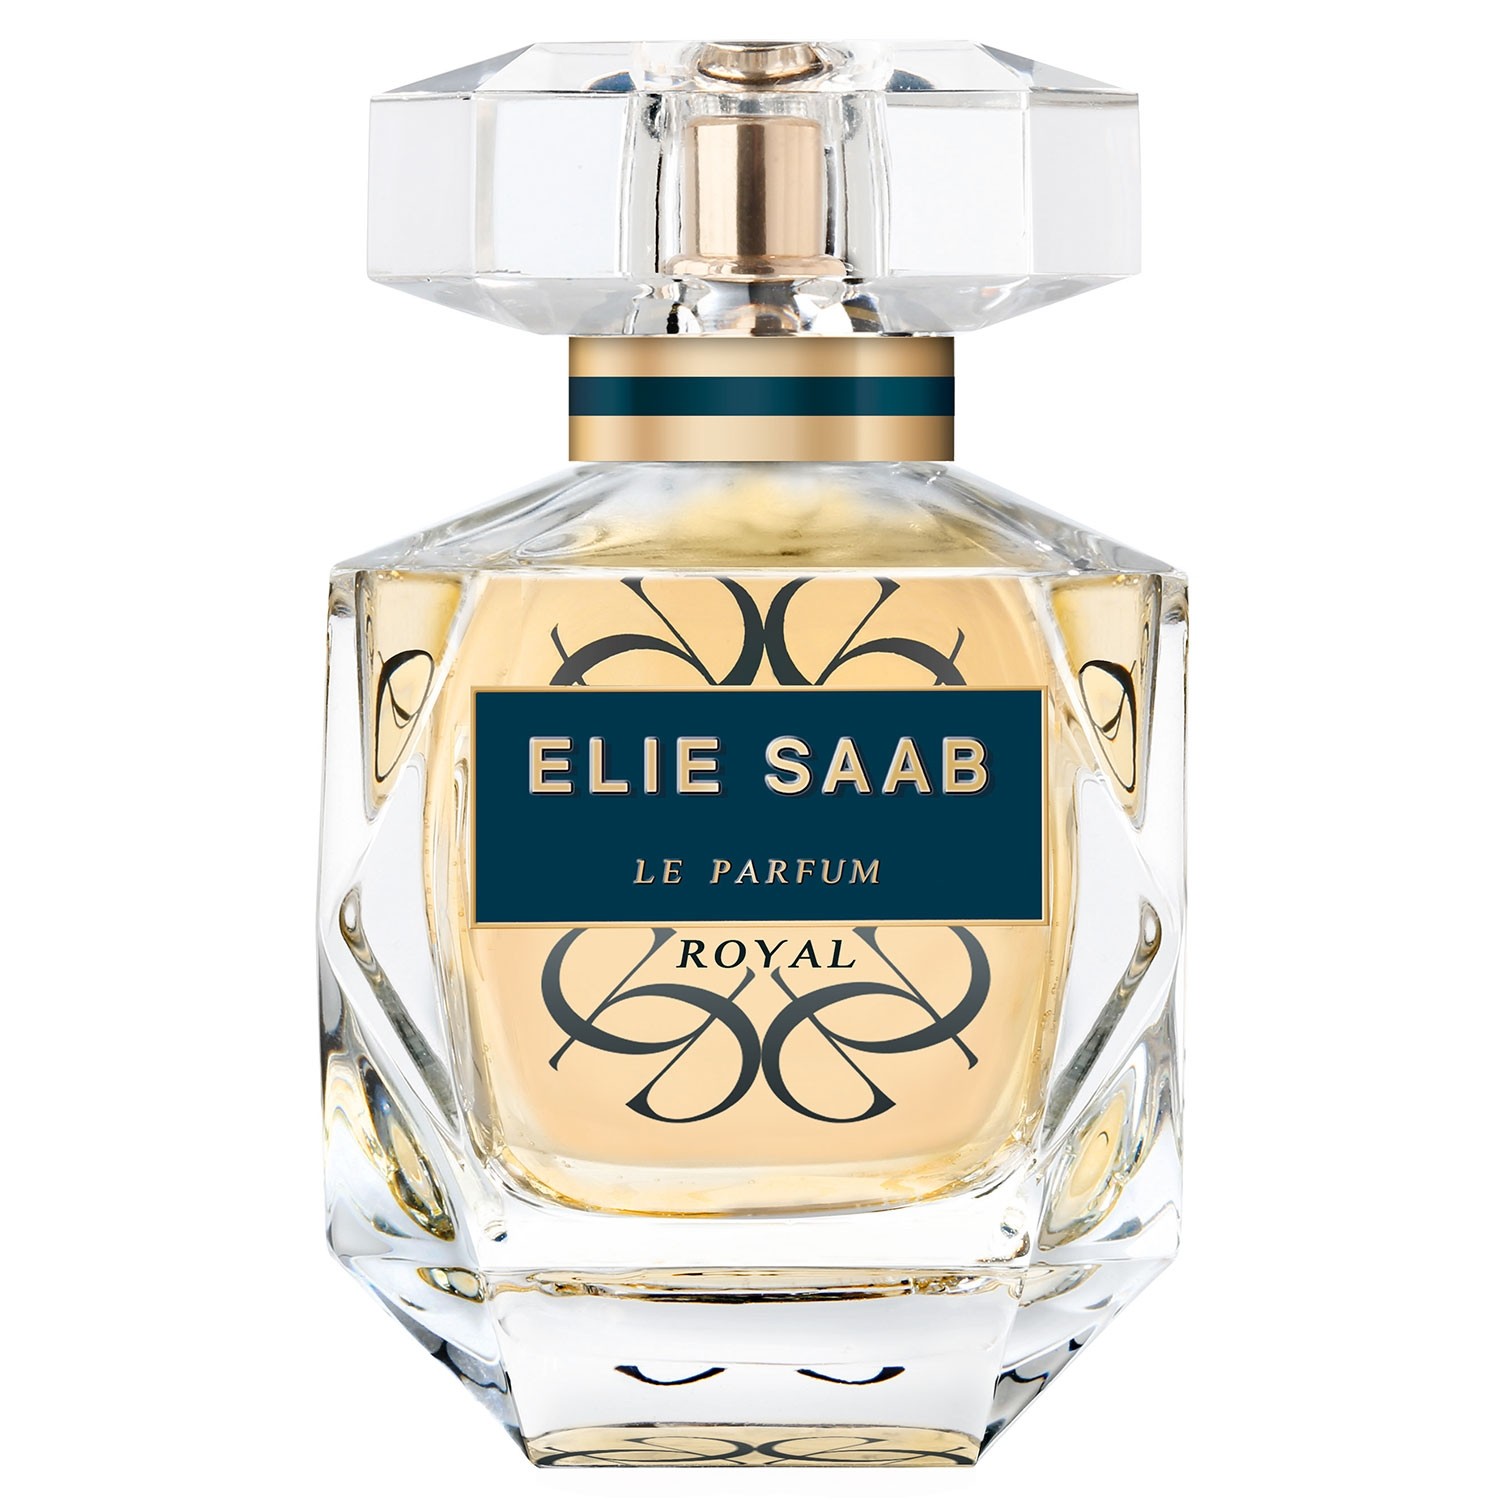 Elie Saab Le Parfum Royal Perfume